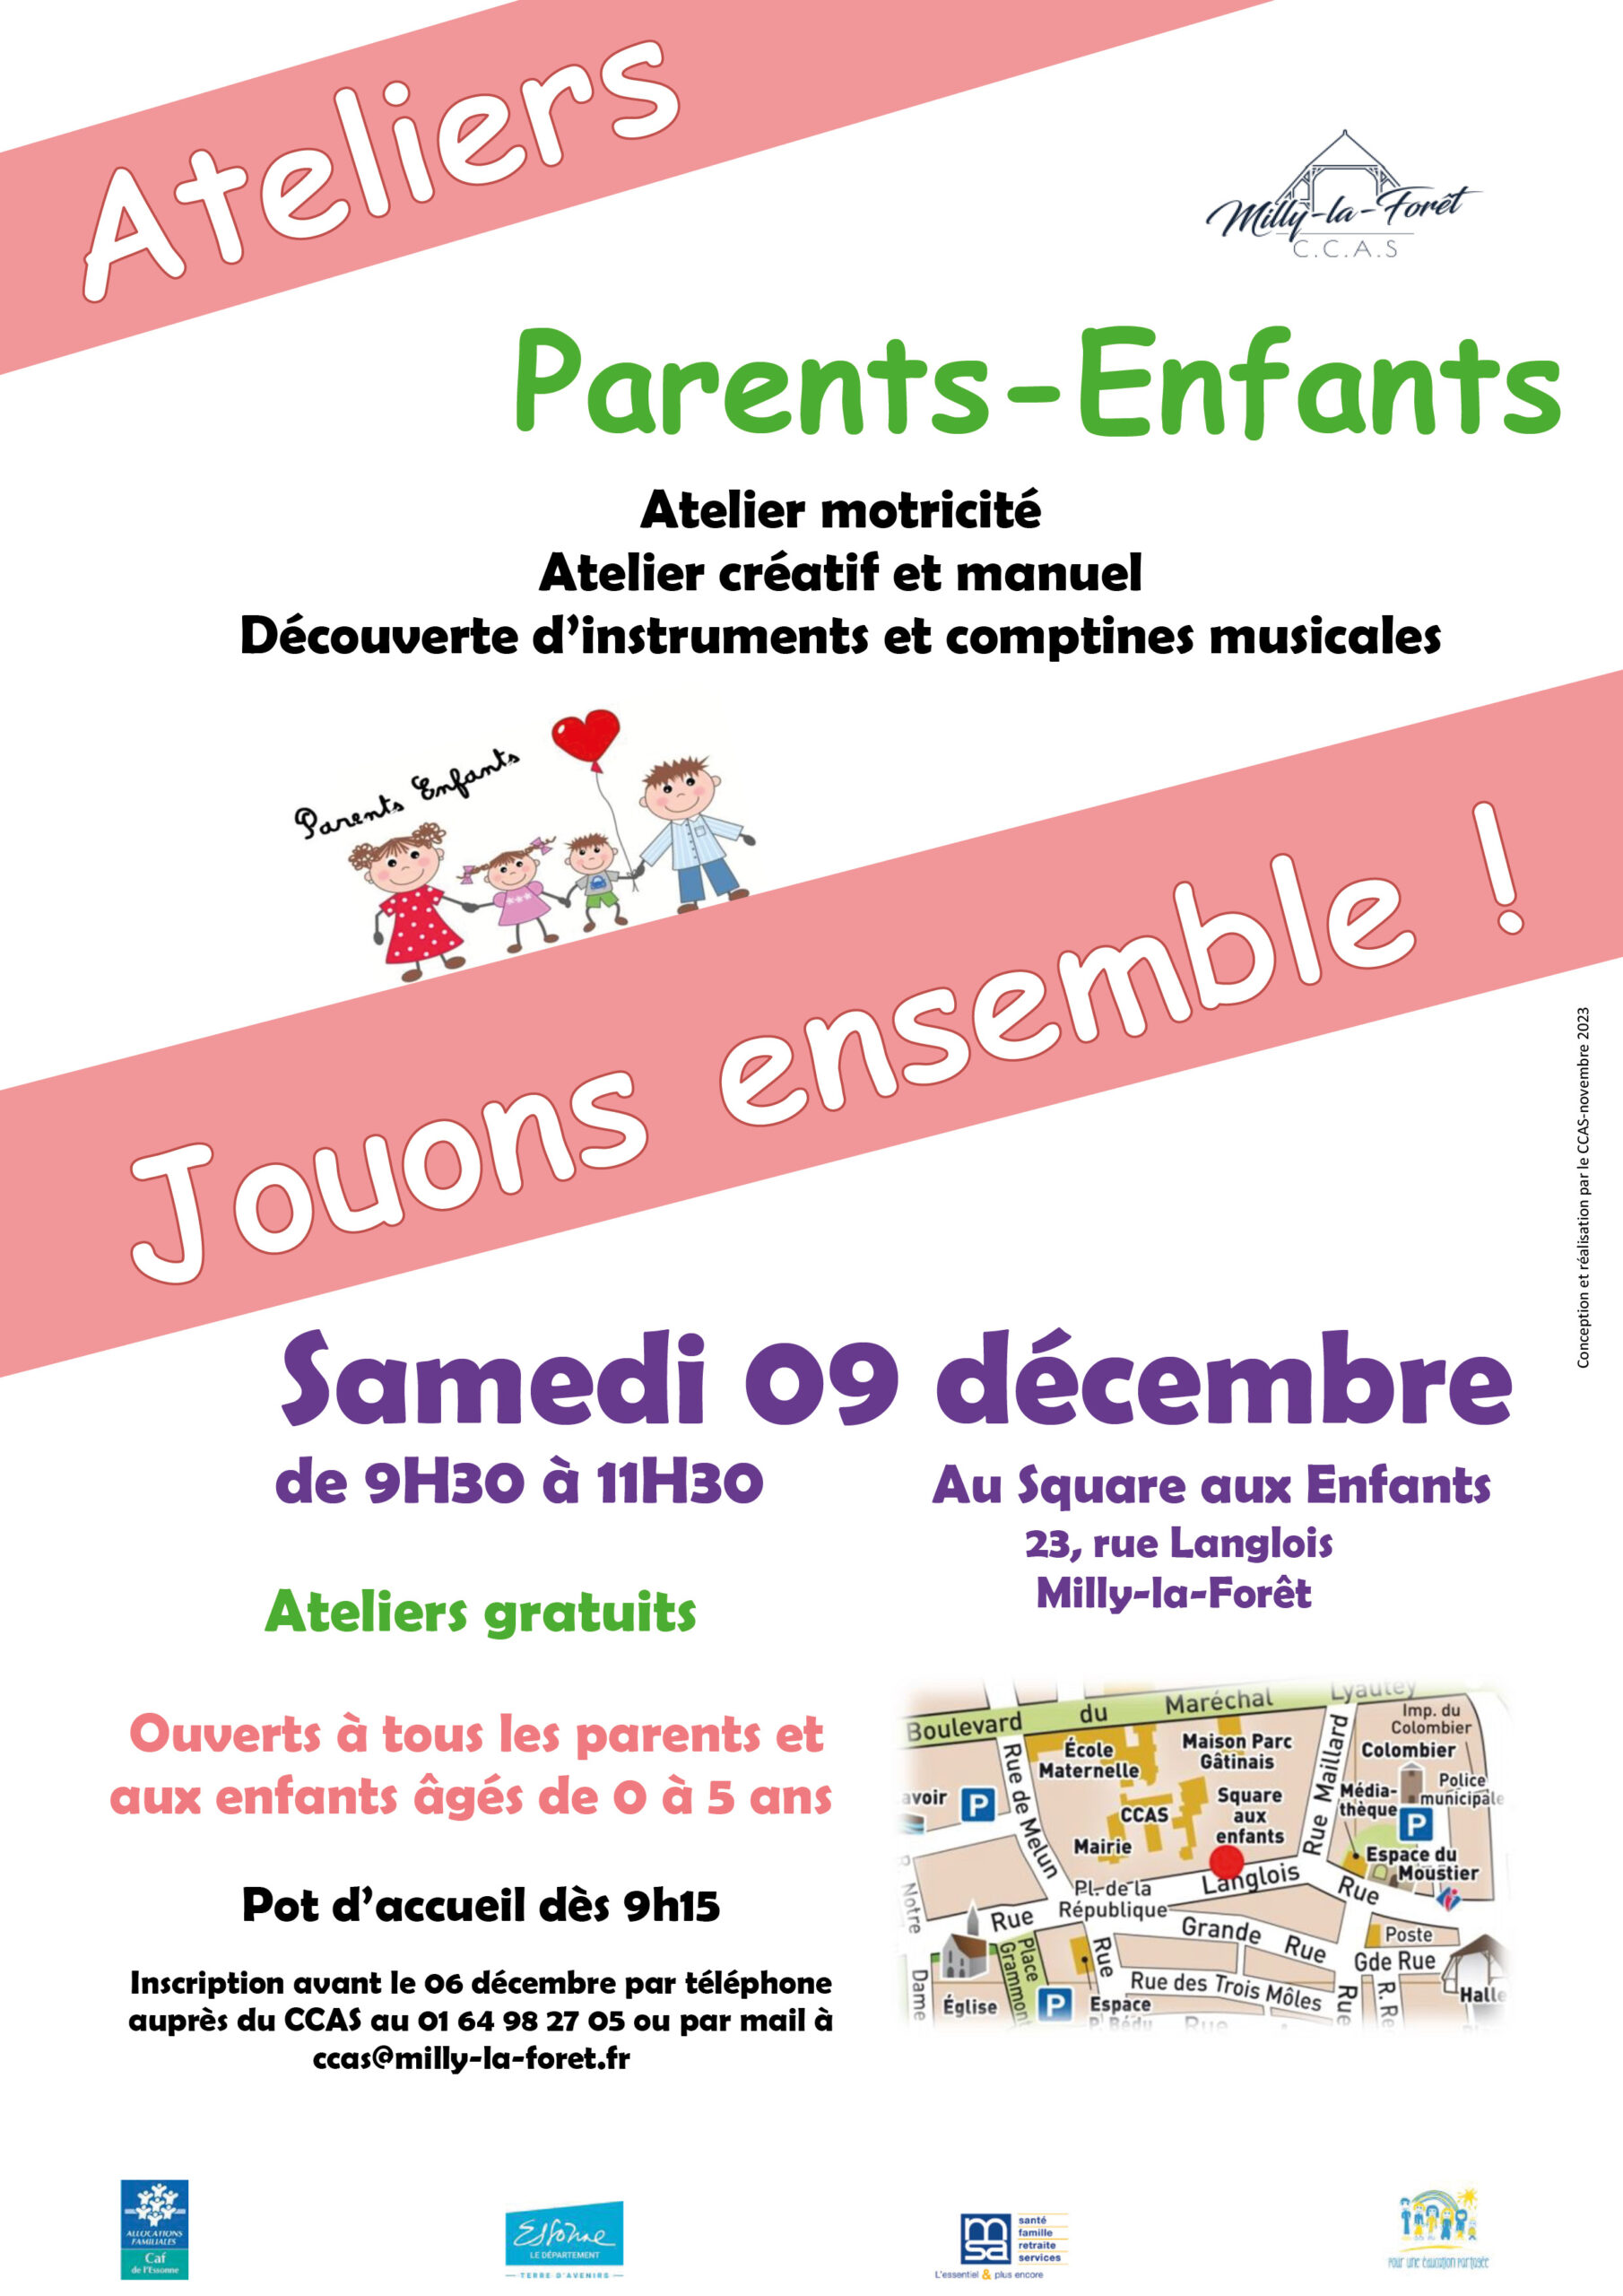 Ateliers parents-enfants - Milly-la-Forêt